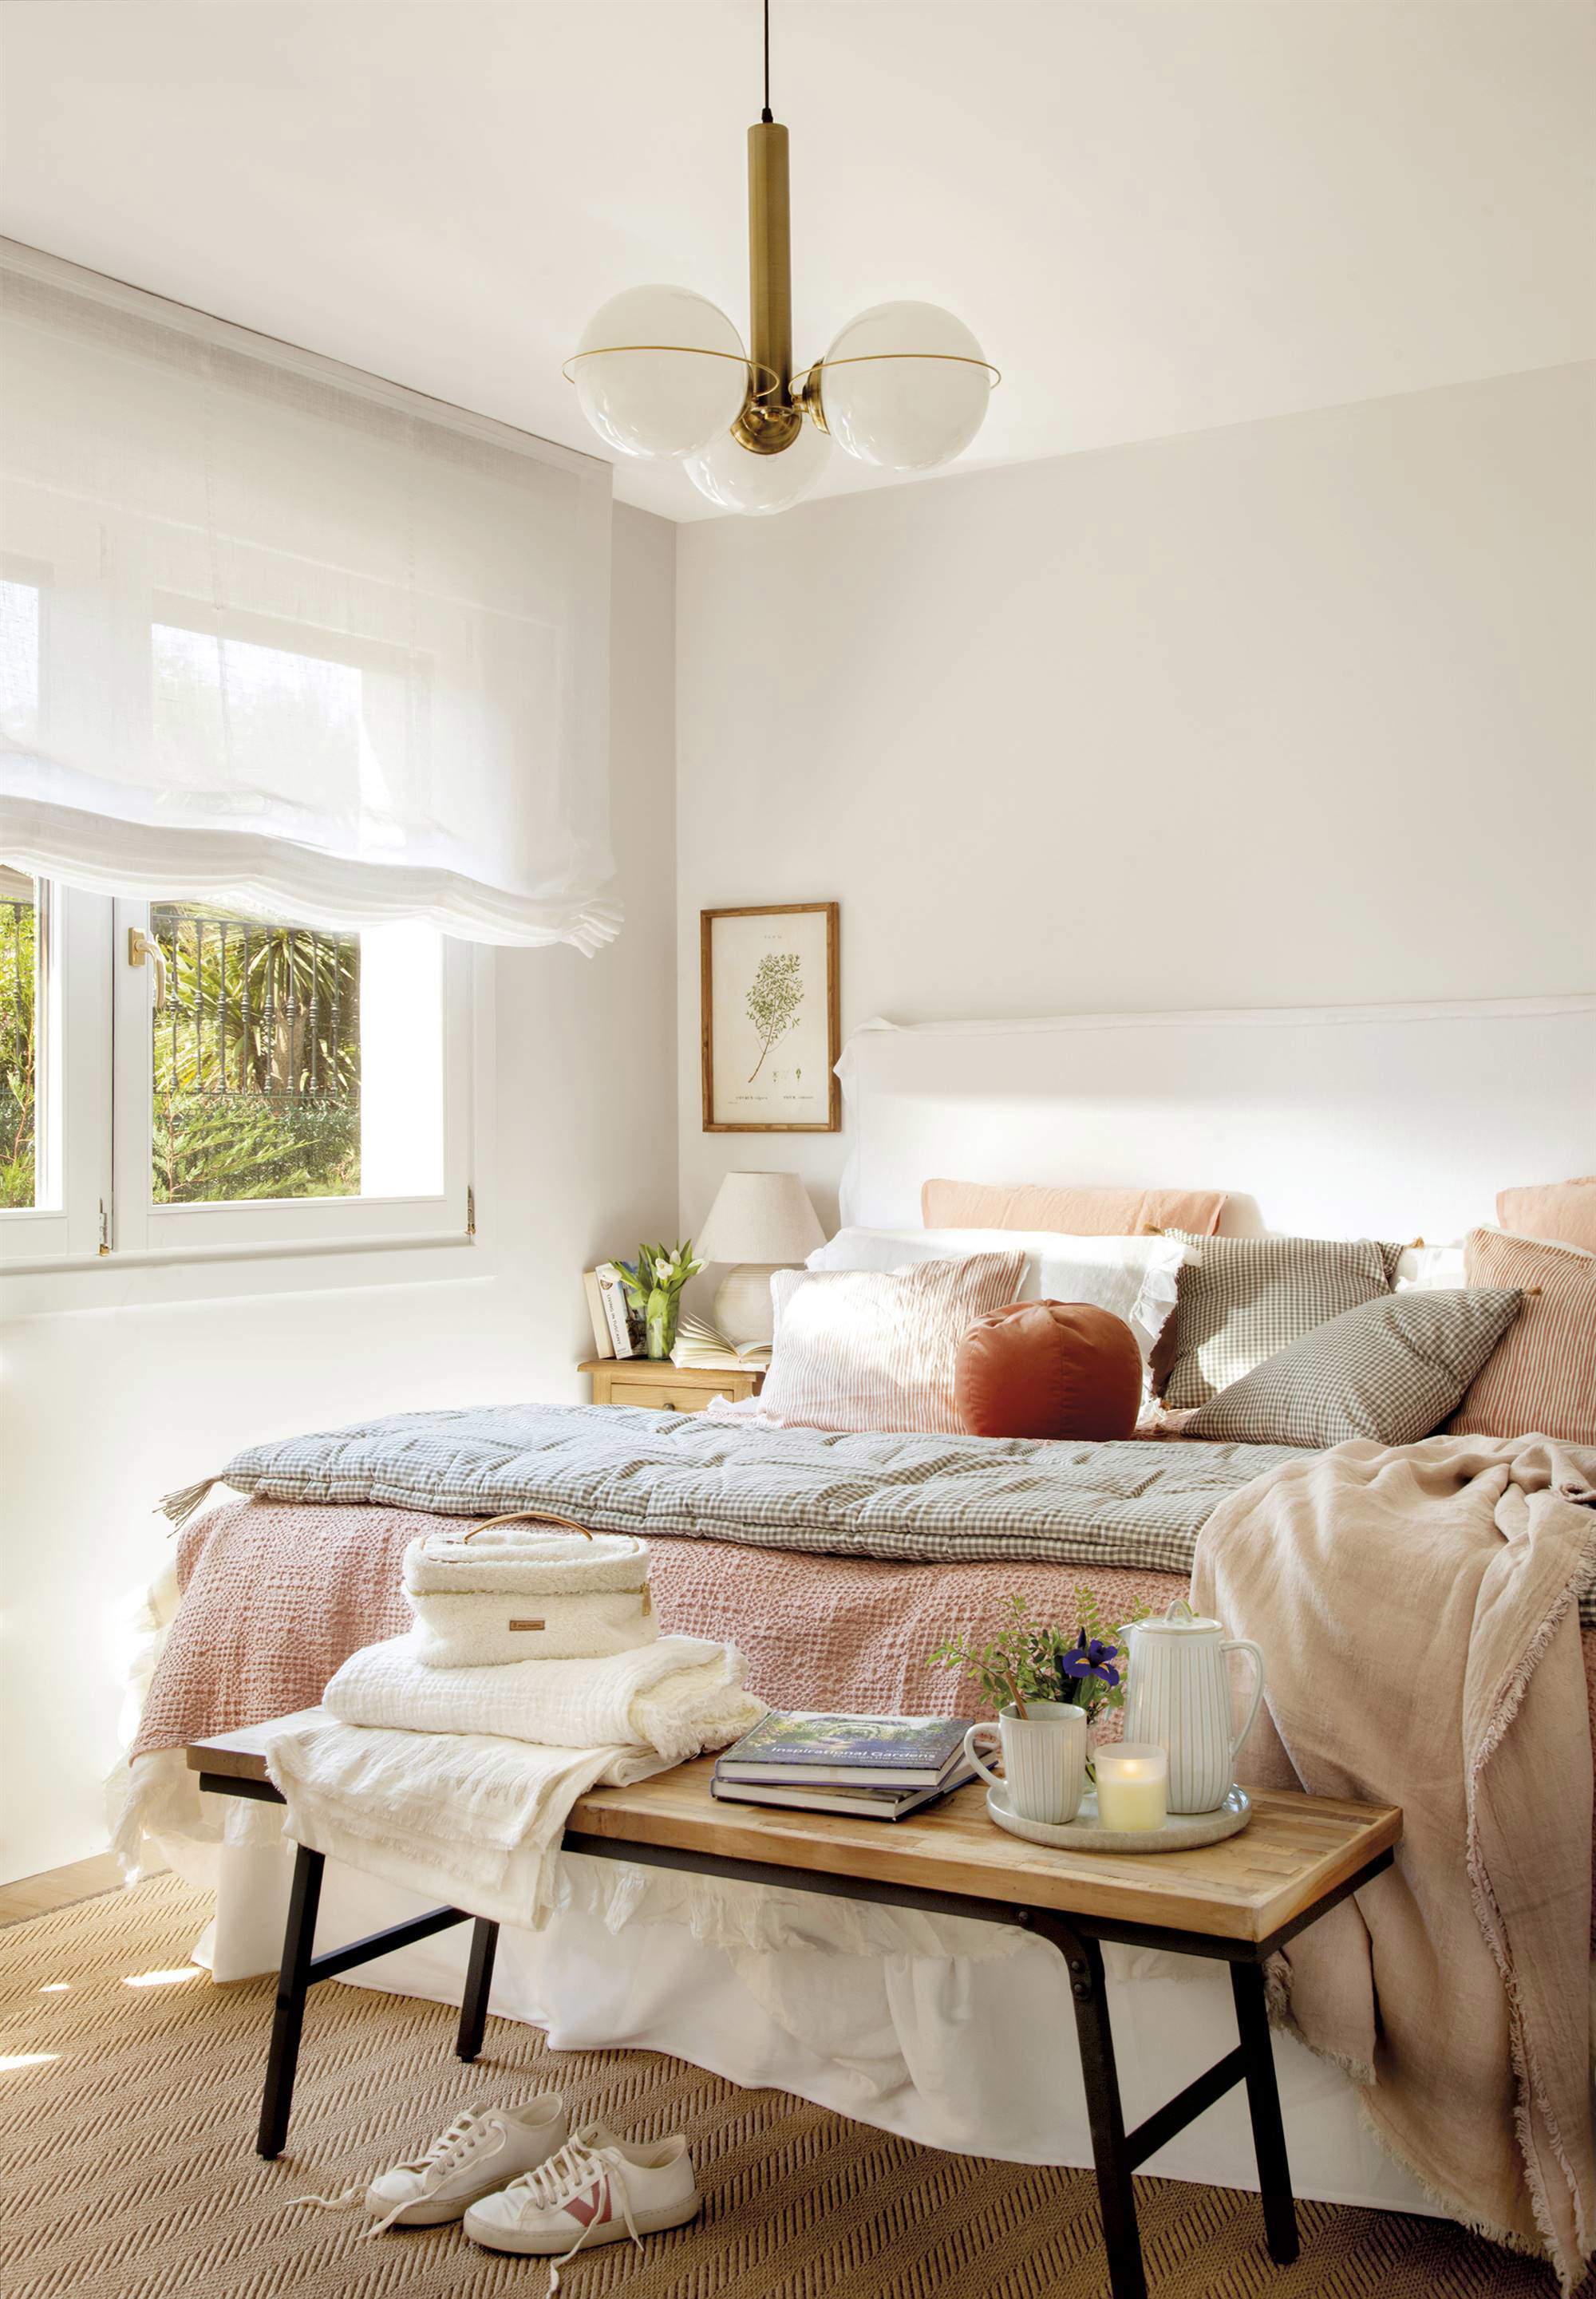 Dormitorio con cama de color blanco, estores blancos, lámpara de techo con bolas, ropa de cama en tonos rosados y banco a los pies0